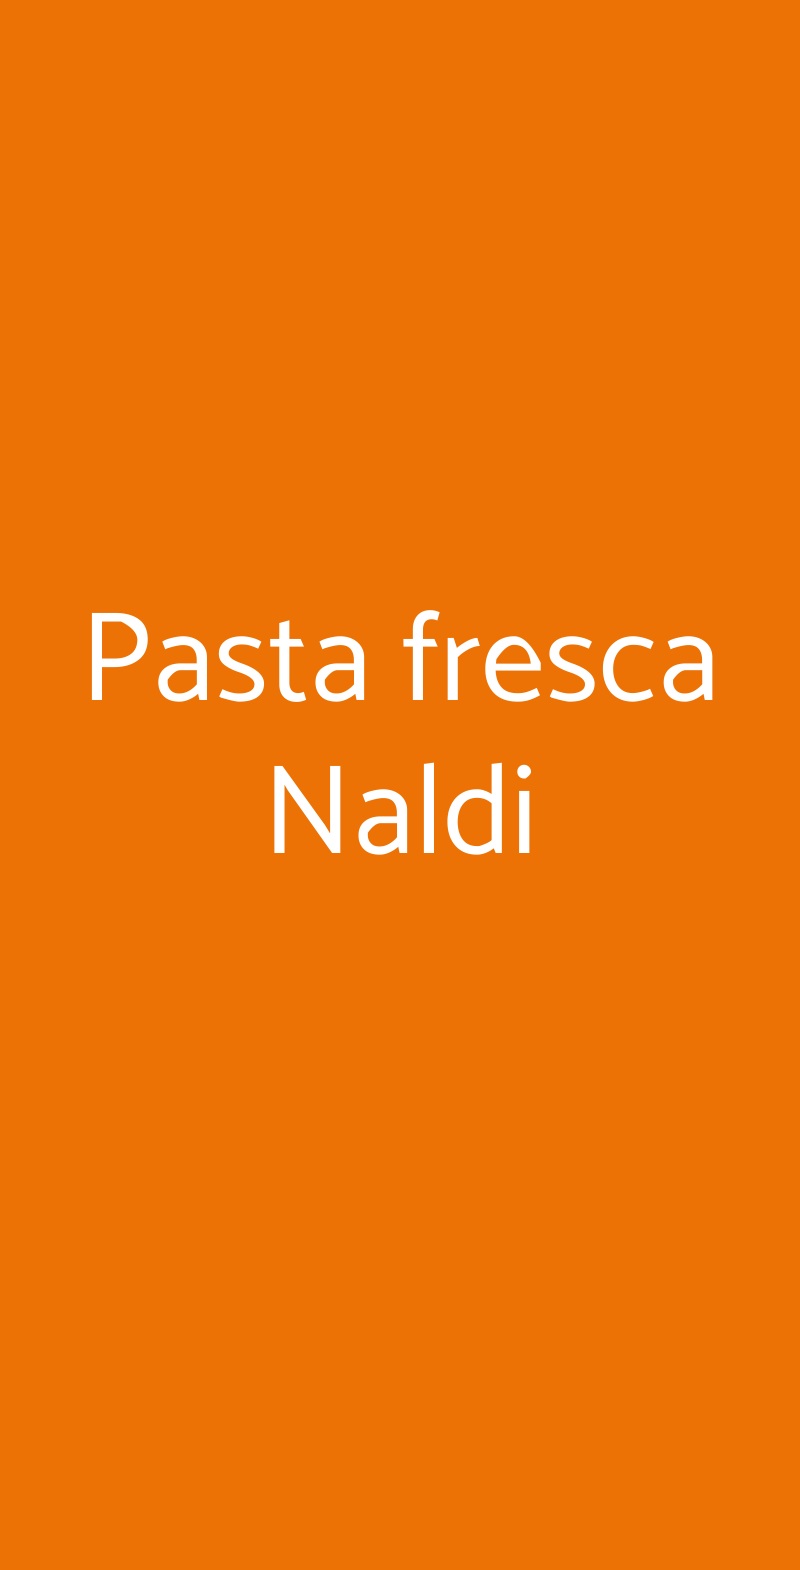 Pasta fresca Naldi Bologna menù 1 pagina